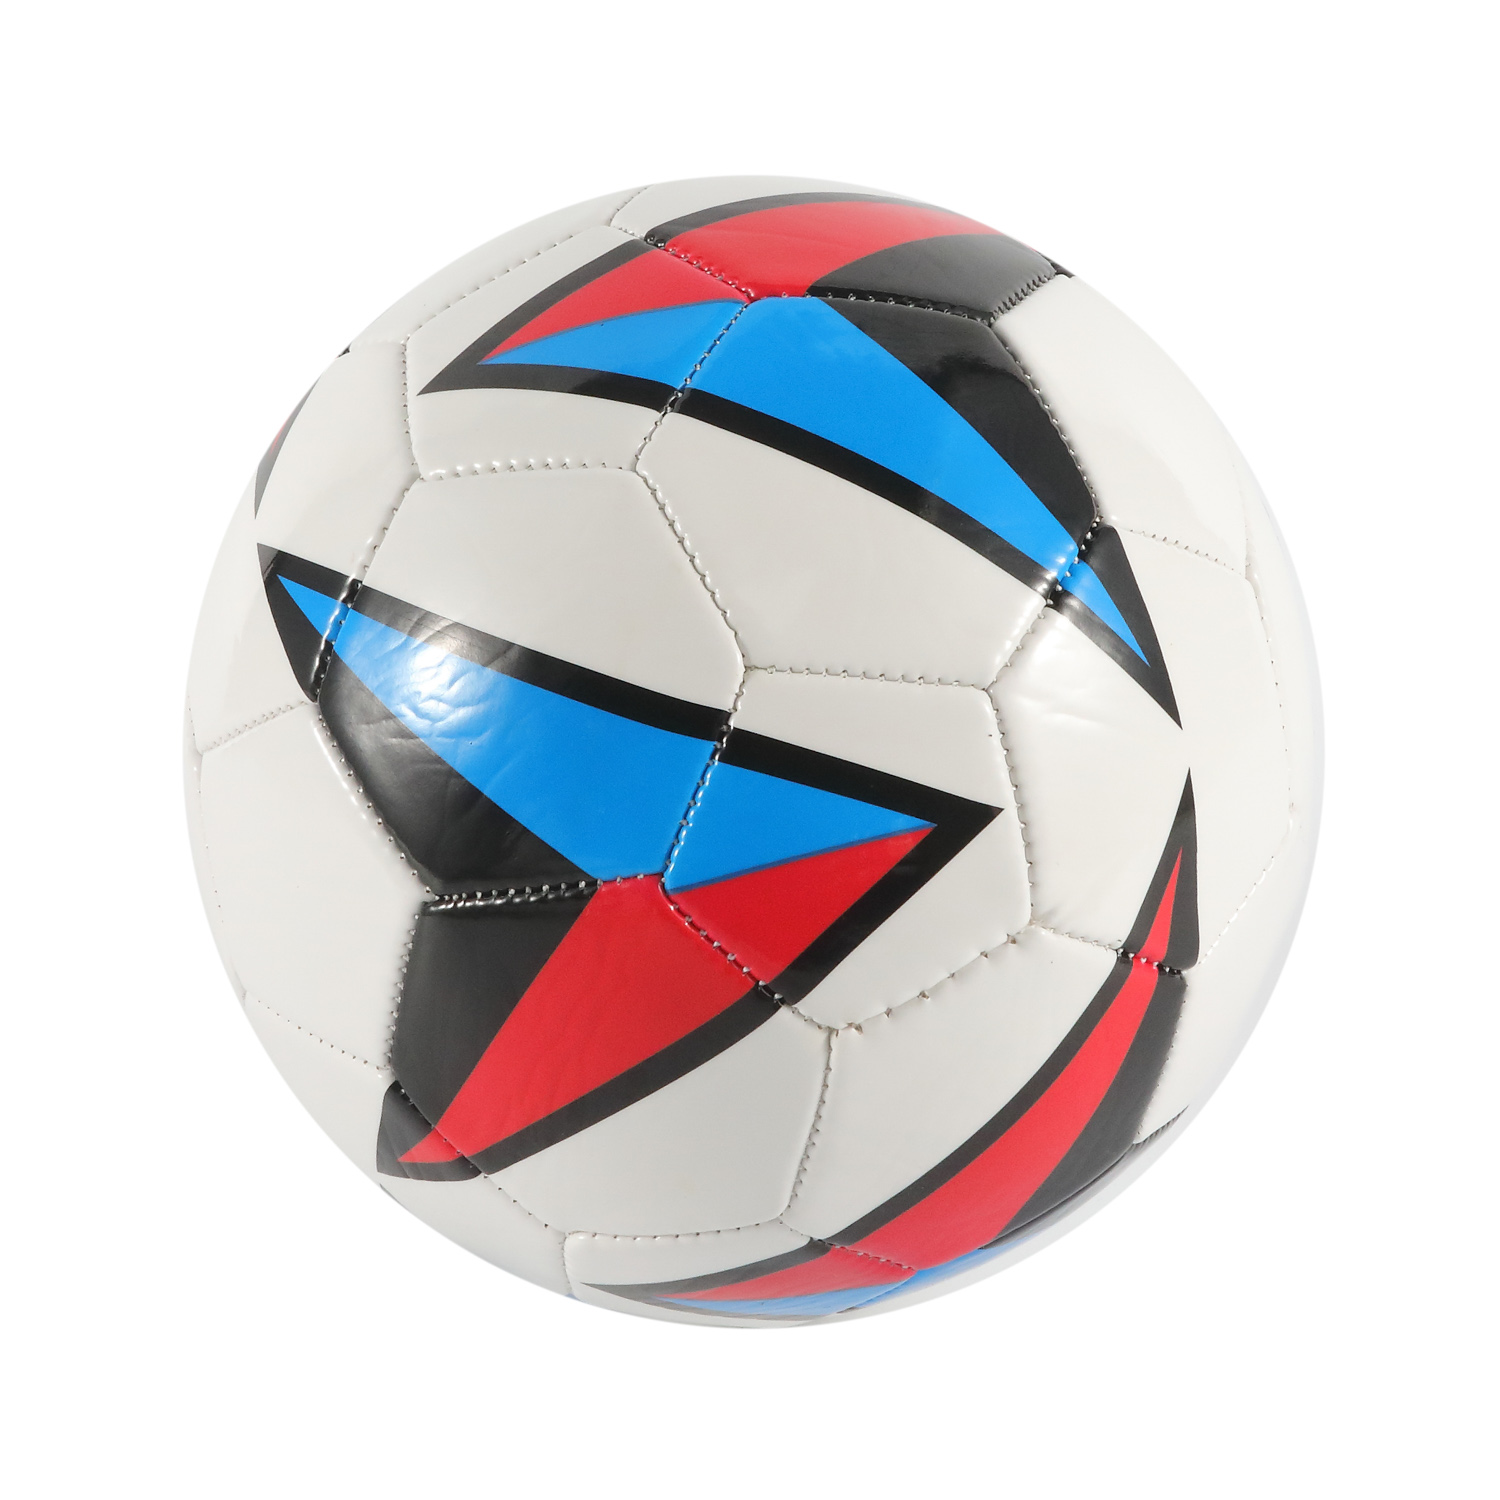 Logo personnalisé traditionnel cousu à la machine Football /Soccer PVC Cover Game&Match